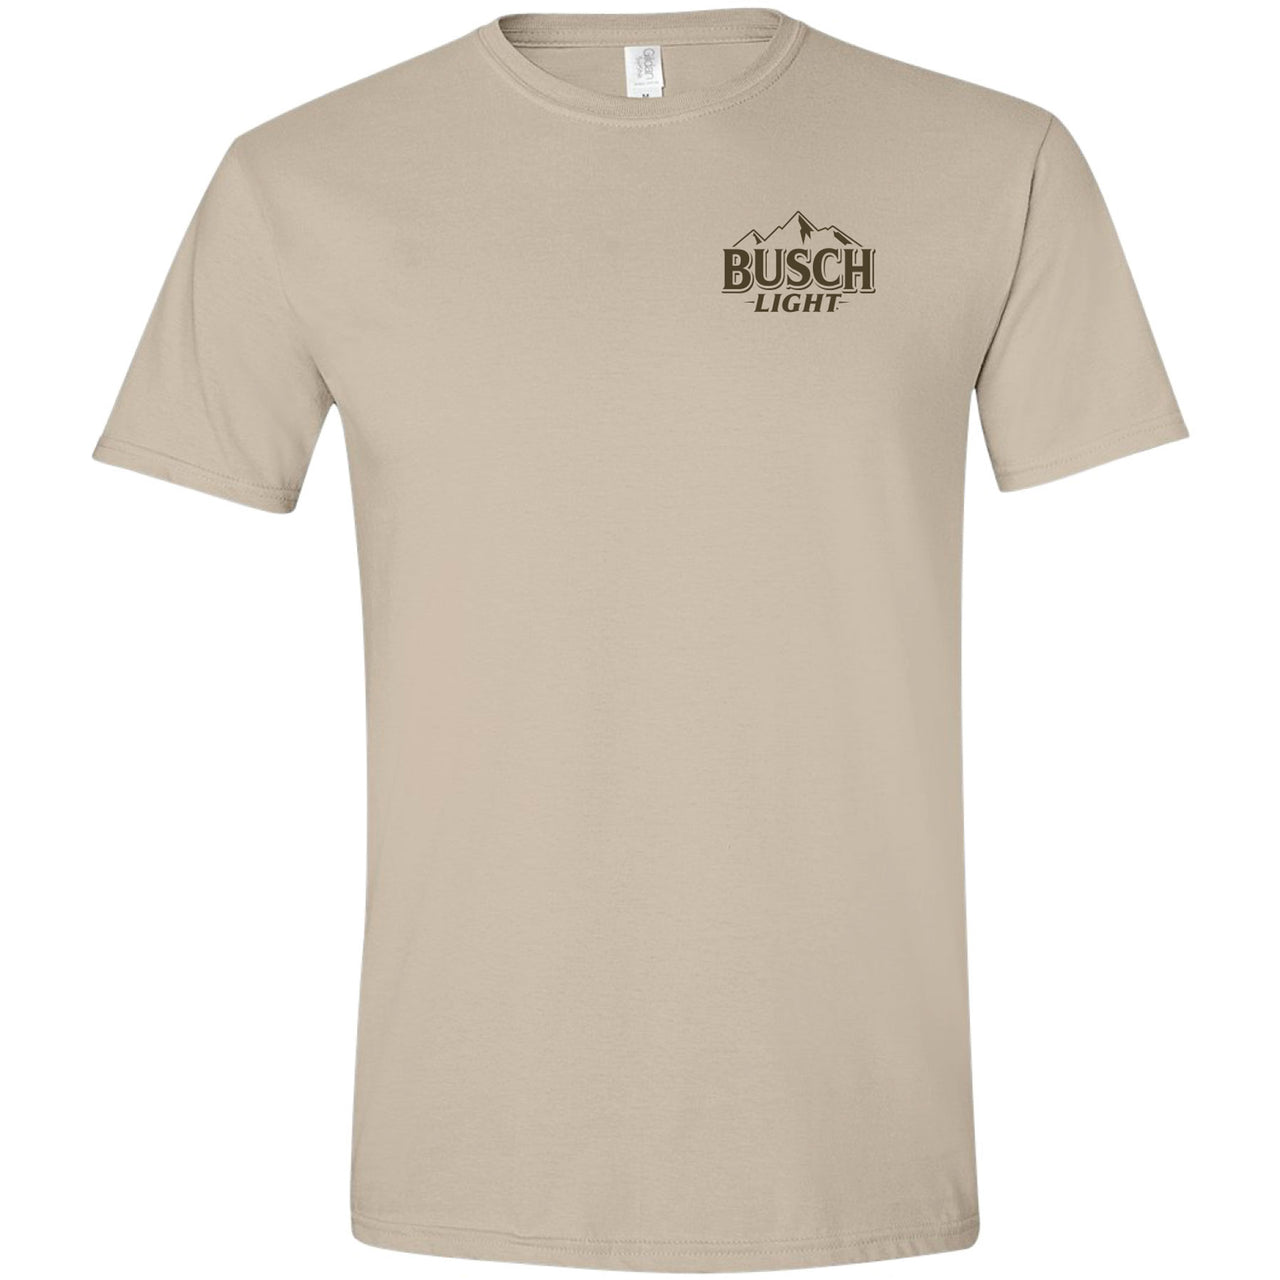 Busch Light - Man's Best Fishing Companion - 2-sided T-shirt